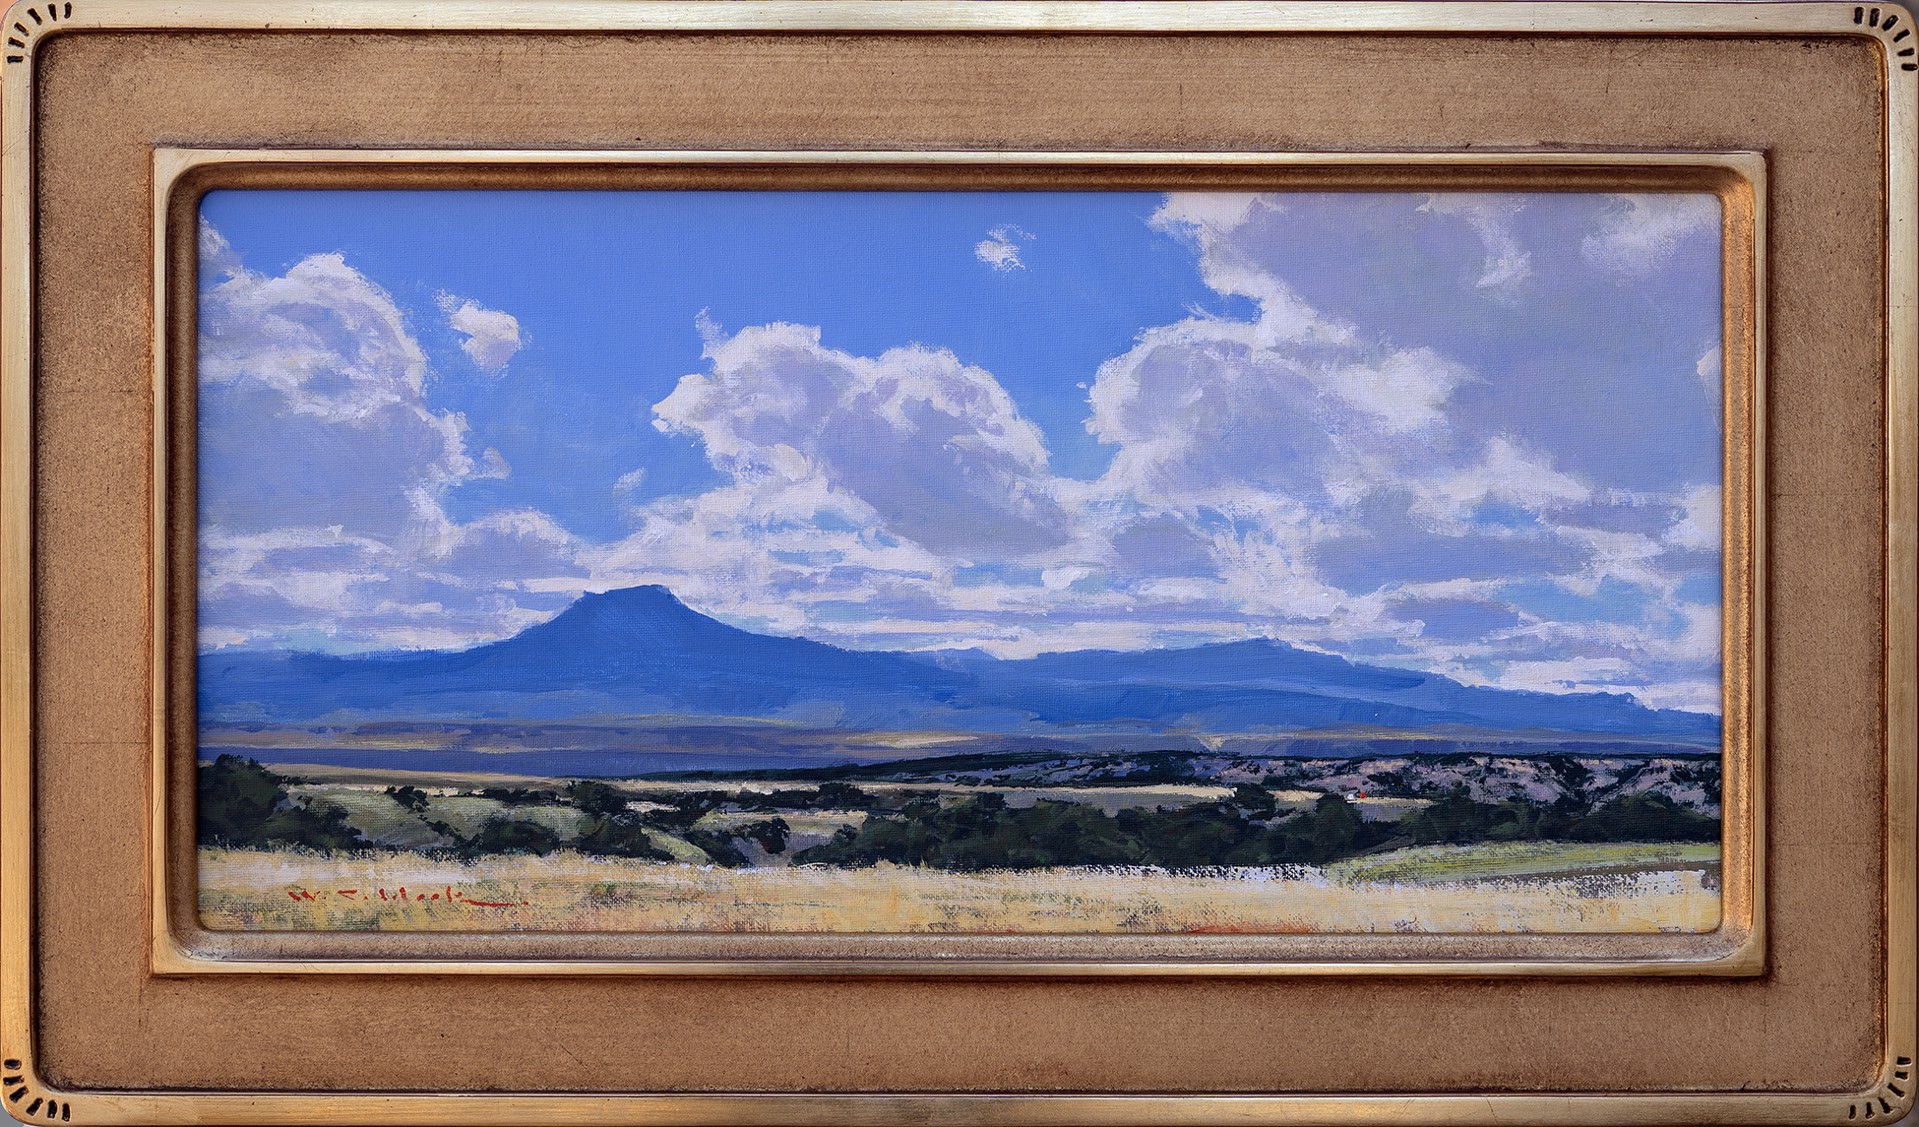 El Pedernal Vista by William C. Hook